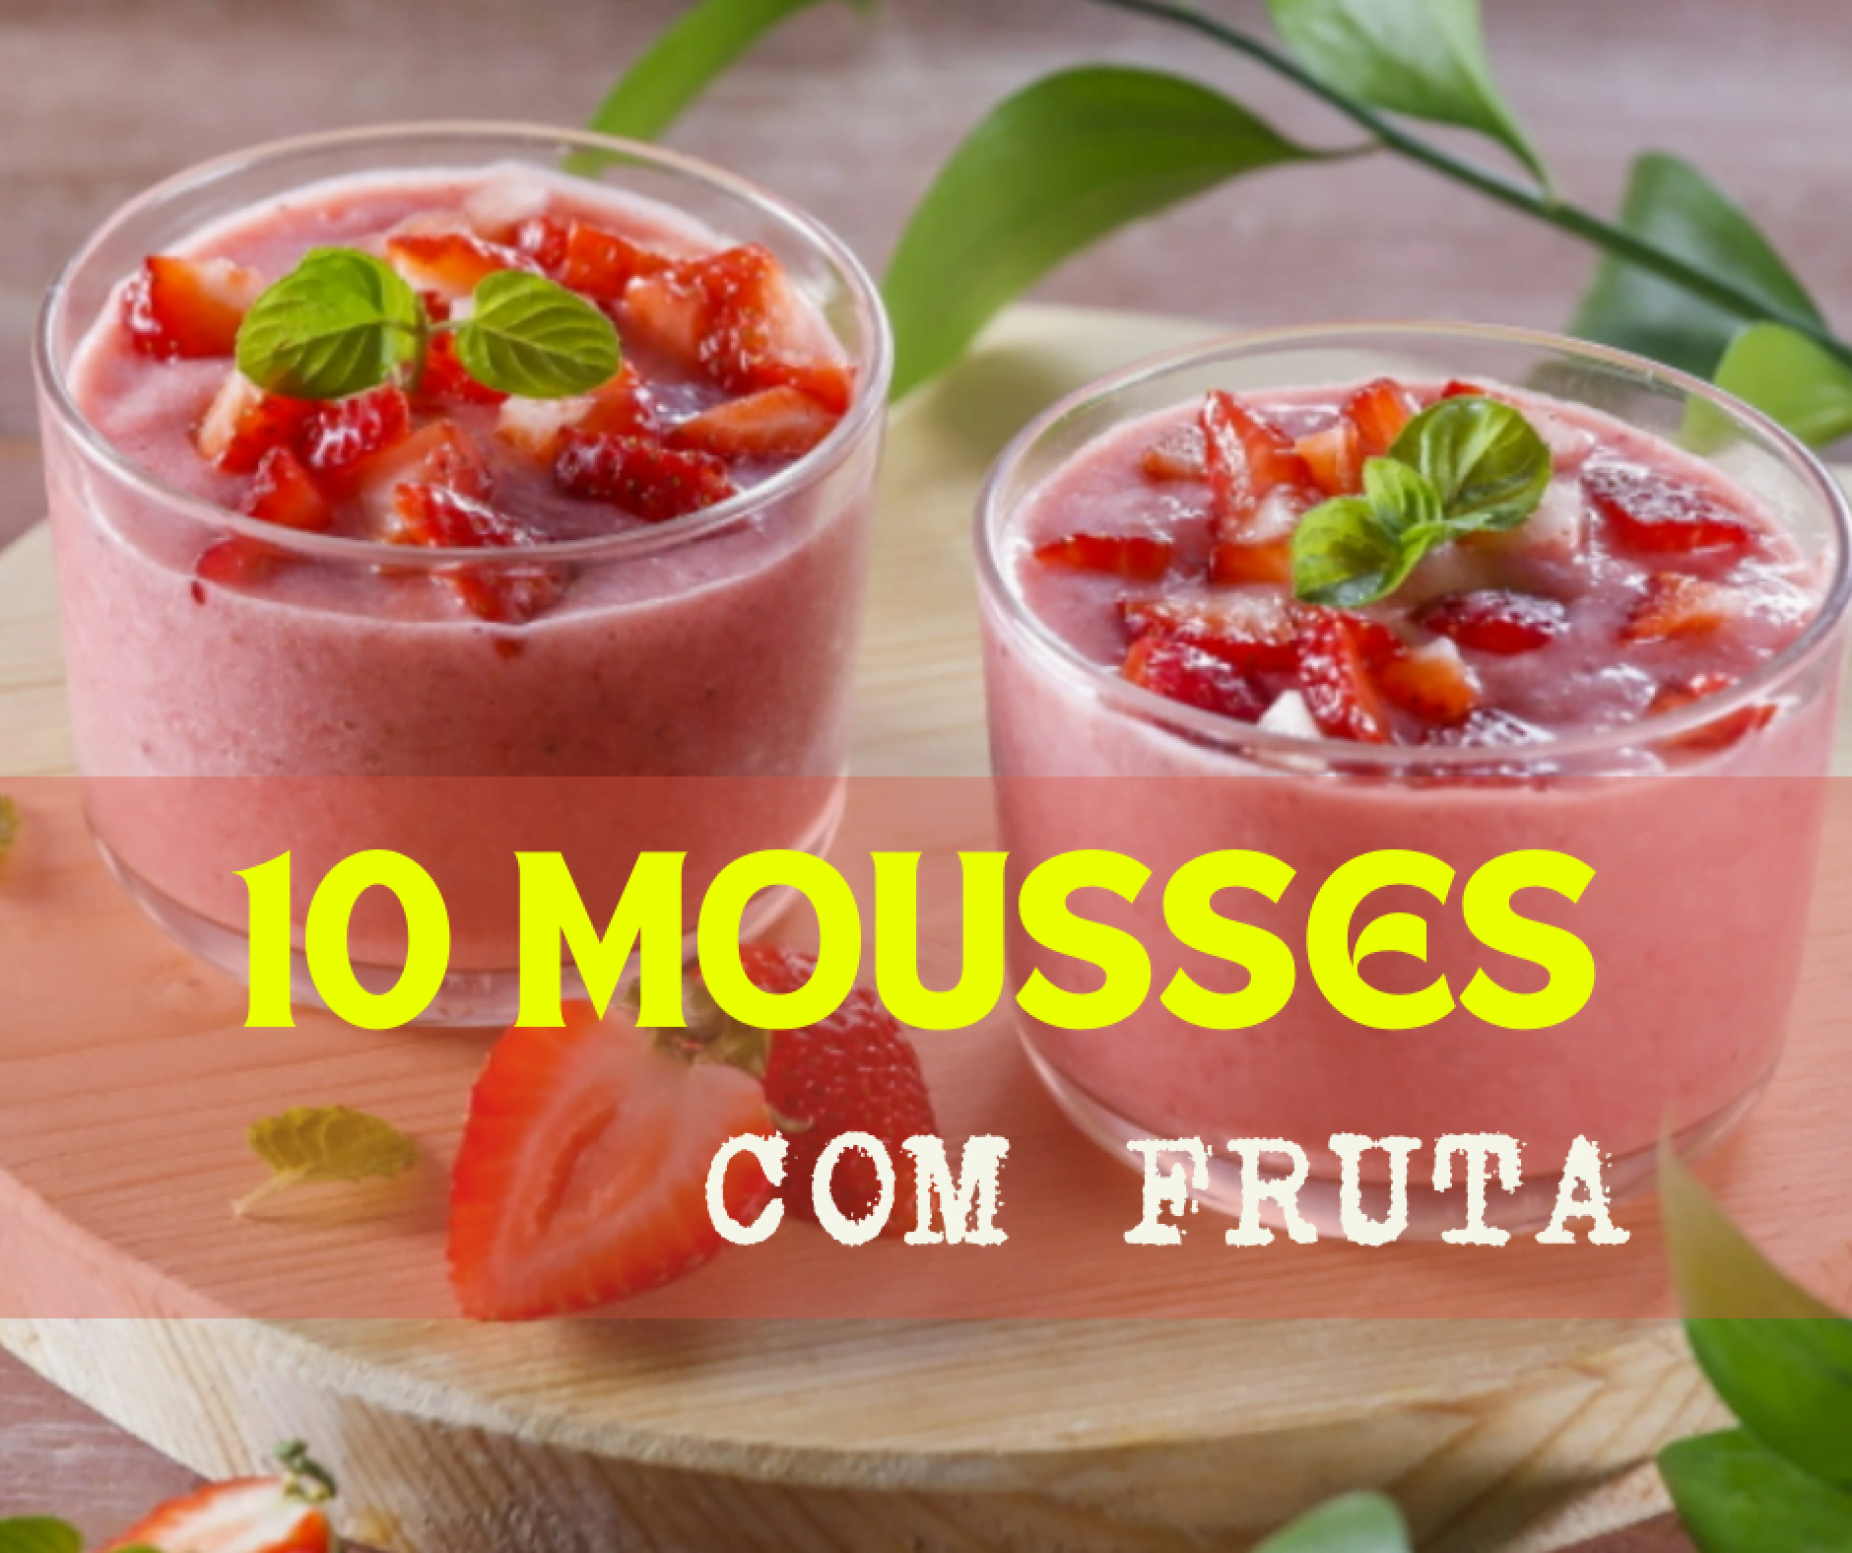 10 Mousses com fruta!